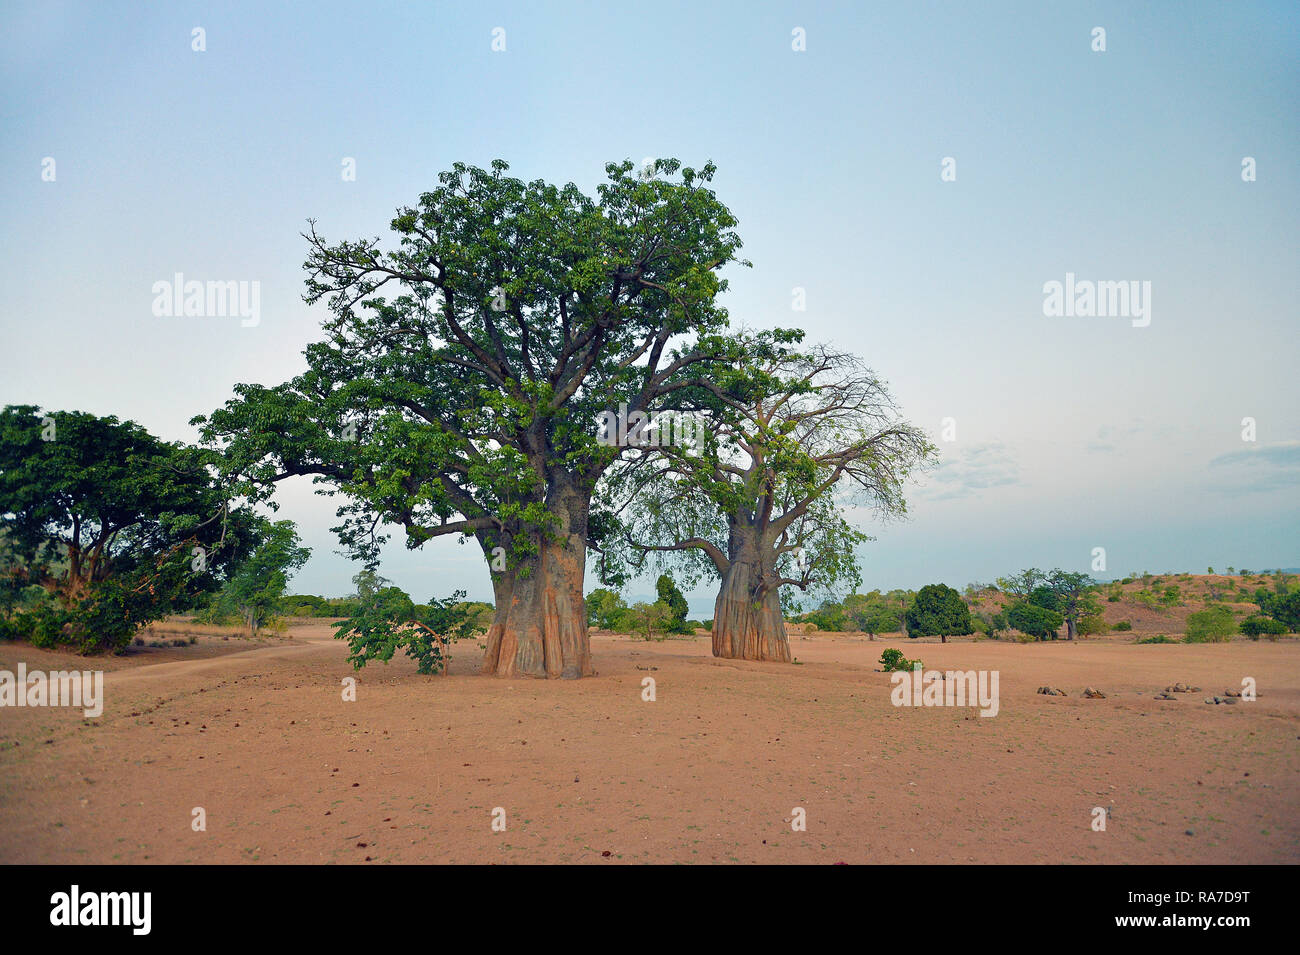 Baobab (Adansonia digitata) auch Affenbrotbaum oder Afrikanischer Affenbrotbaum genannt, Malawi | Baobab (Adansonia digitata), Malawi, Africa Stock Photo